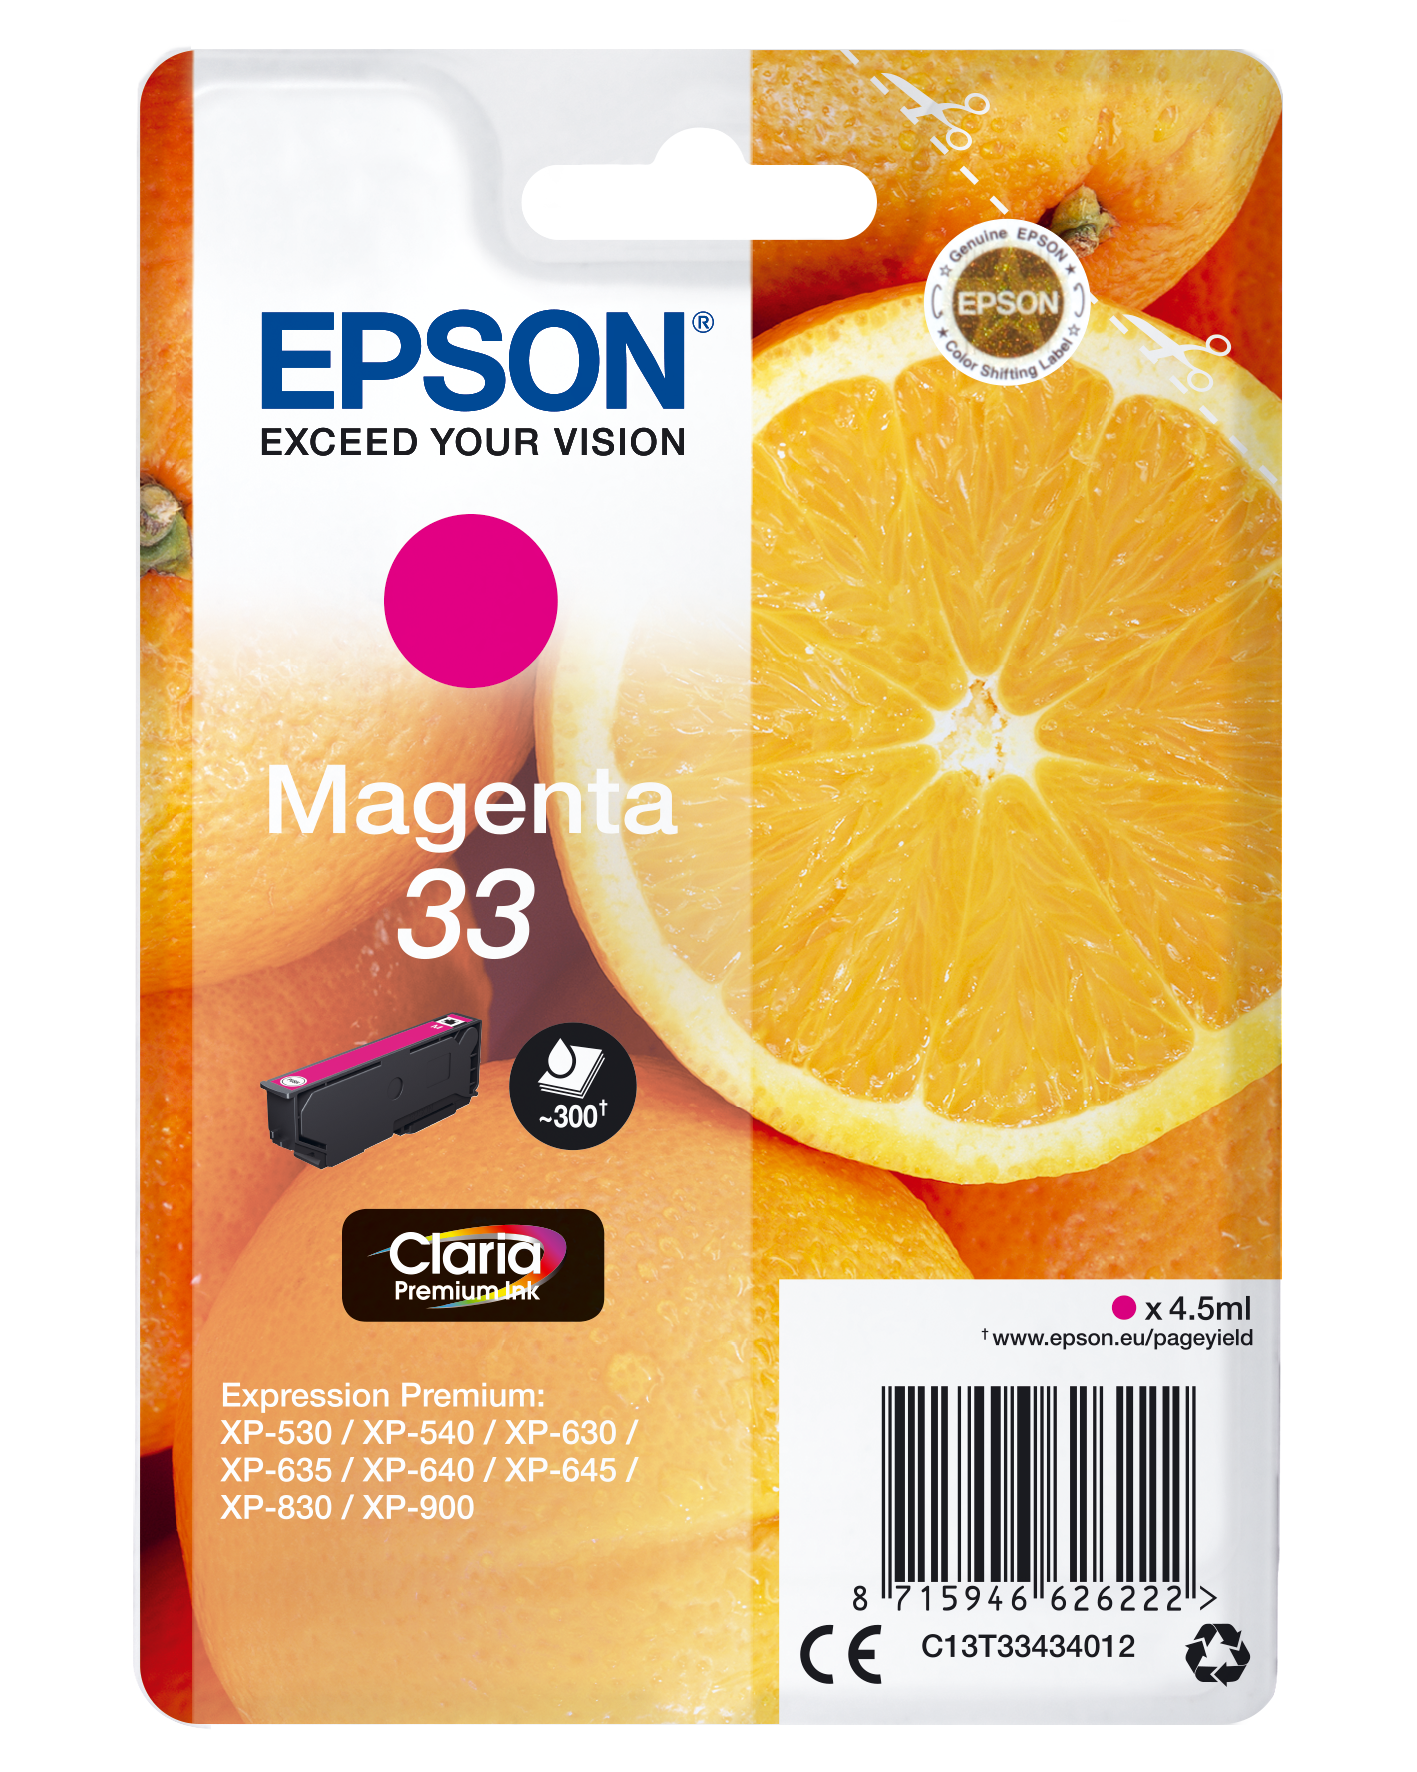 Epson Oranges Singlepack Magenta 33 Claria Premium Ink single pack / magenta